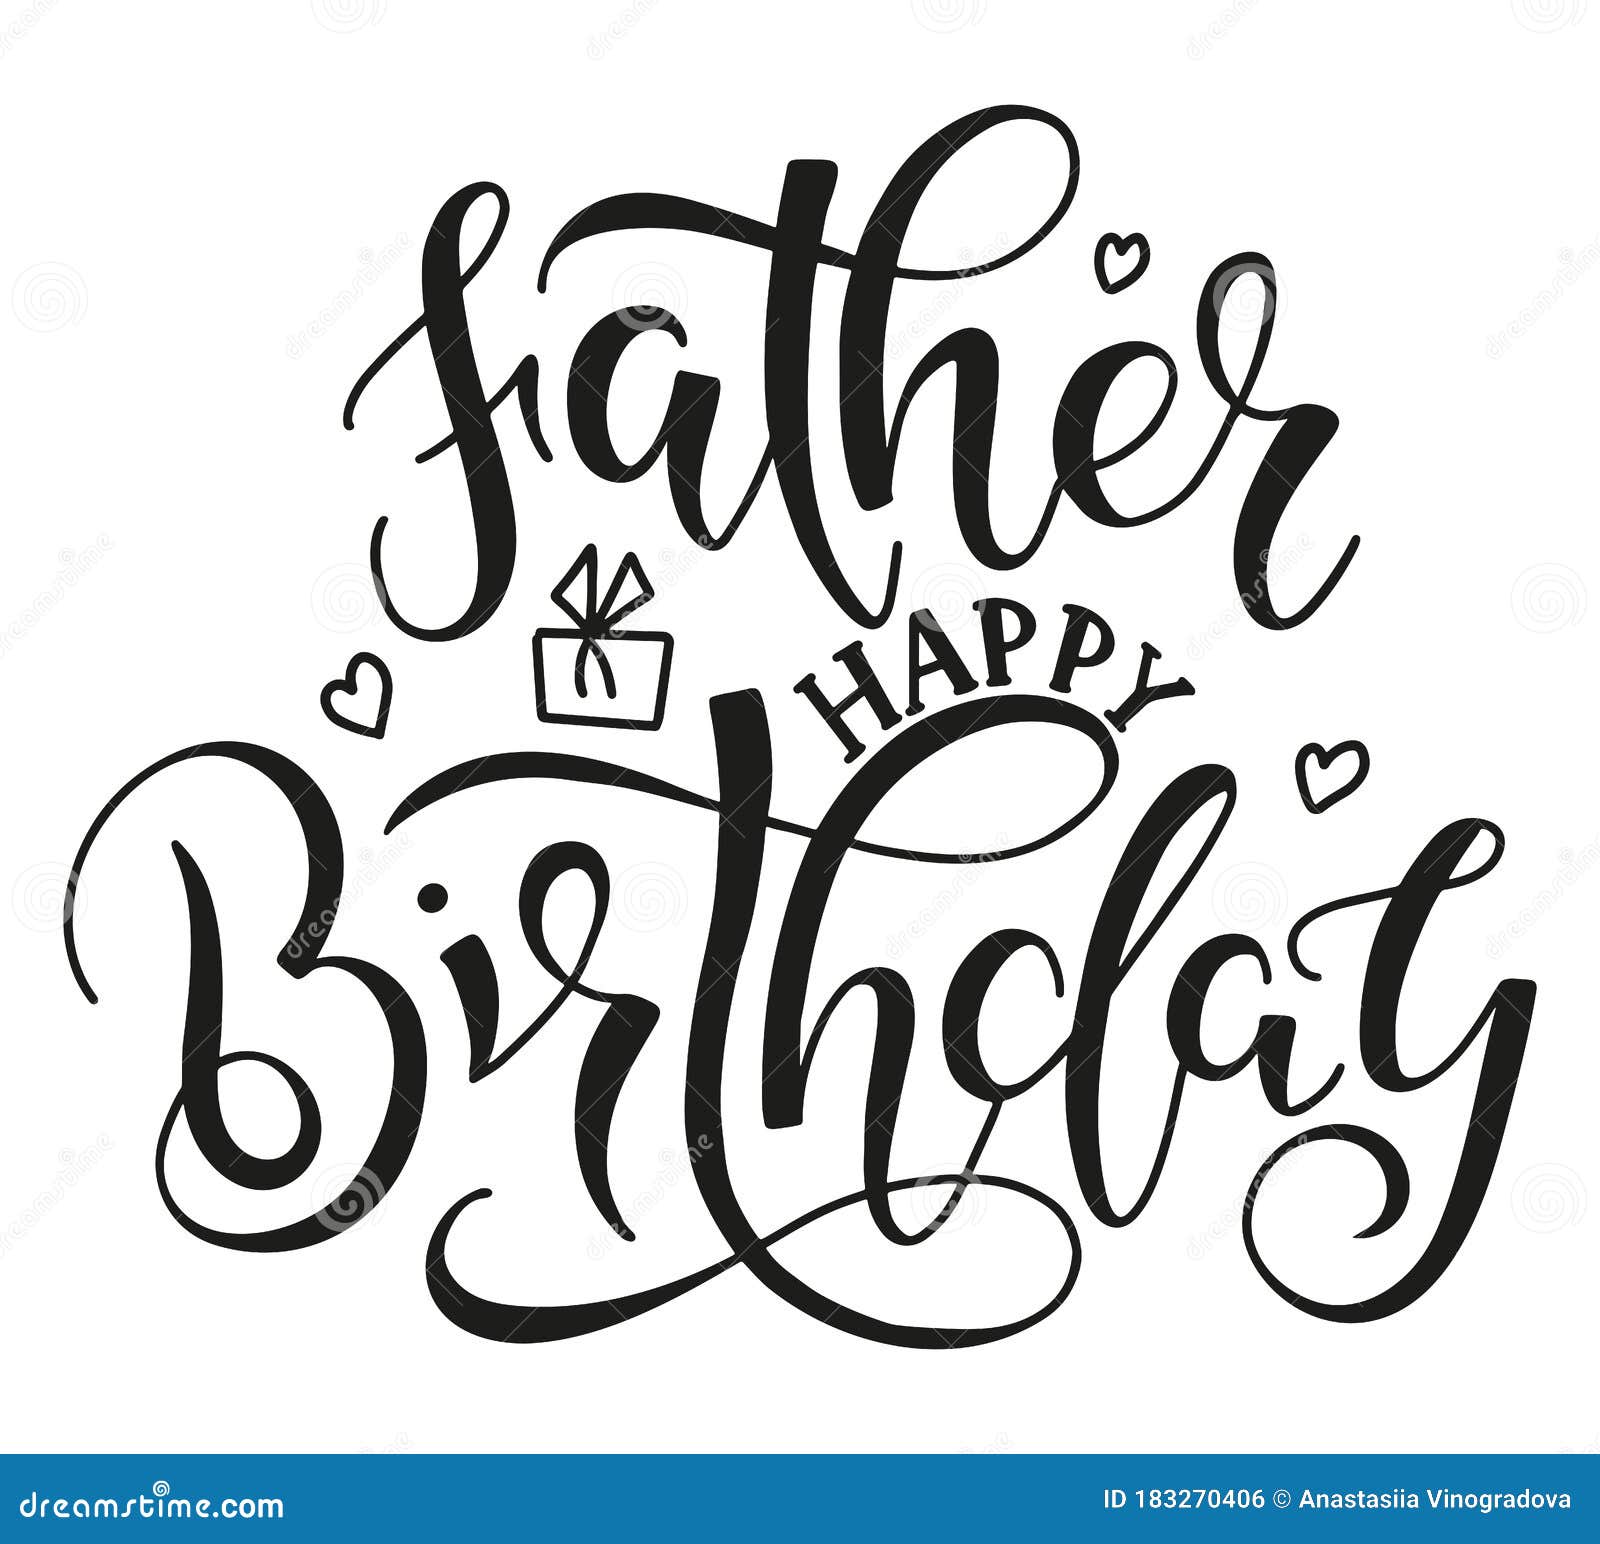 Sinh nhật bố: Hôm nay là ngày sinh nhật của người cha tuyệt vời nhất của bạn. Hãy cùng đón sinh nhật bố và gửi đến anh ấy lời chúc tốt đẹp nhất. Với tình yêu và sự tri ân của bạn, hãy cho bố biết anh ấy là nguồn động viên để bạn tiếp tục vươn lên trong cuộc sống.